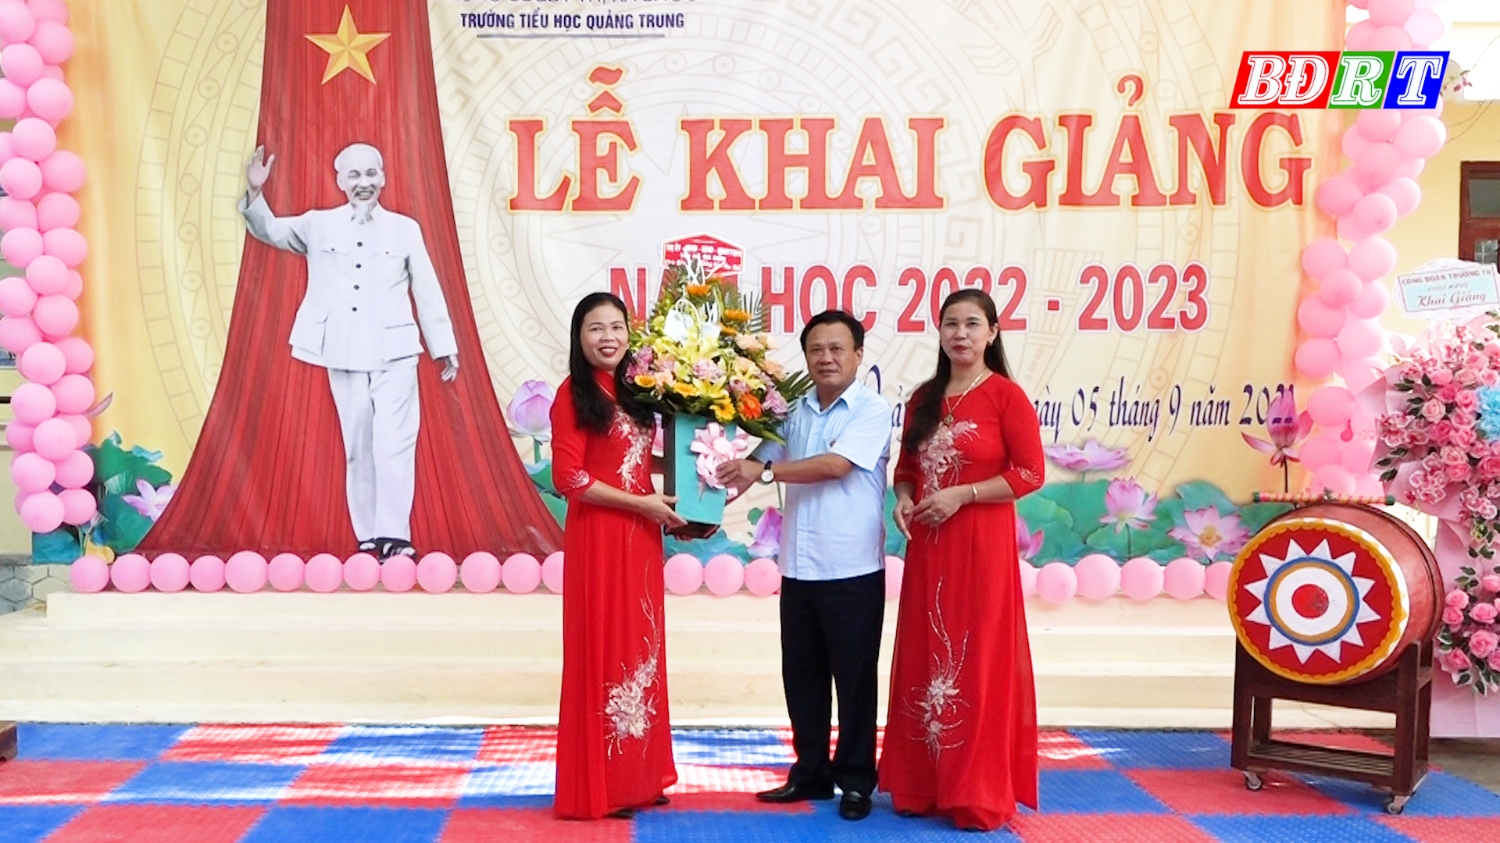 Đồng chí Phó Bí thư Thường trực Thị ủy tặng hoa chúc mừng khai giảng năm học mới tại trường Tiểu học Quảng Trung.